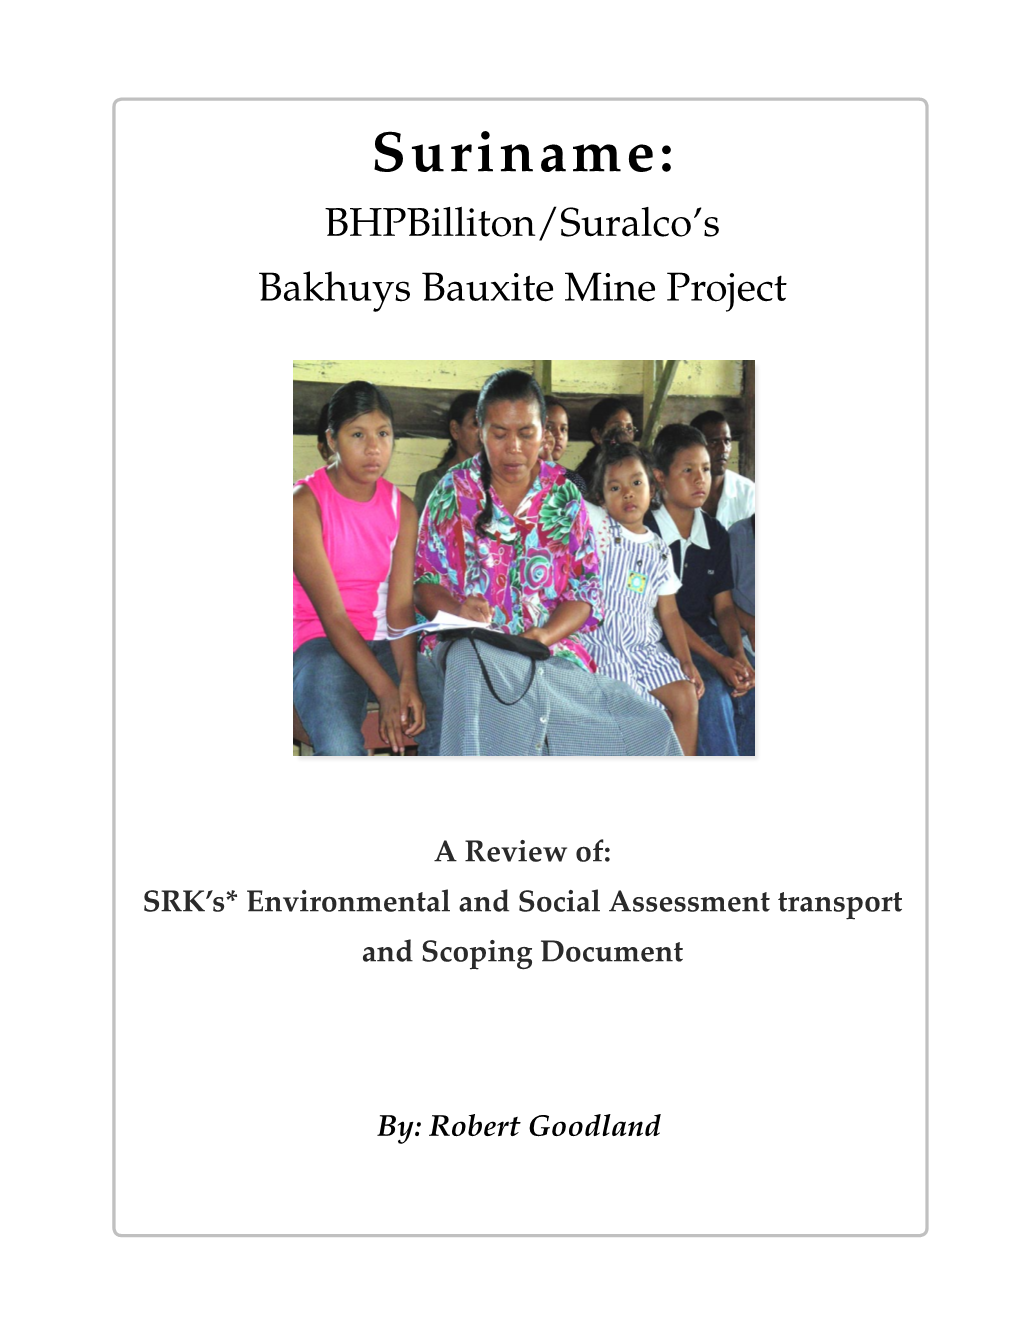 Suriname: Bhpbilliton/Suralco’S Bakhuys Bauxite Mine Project